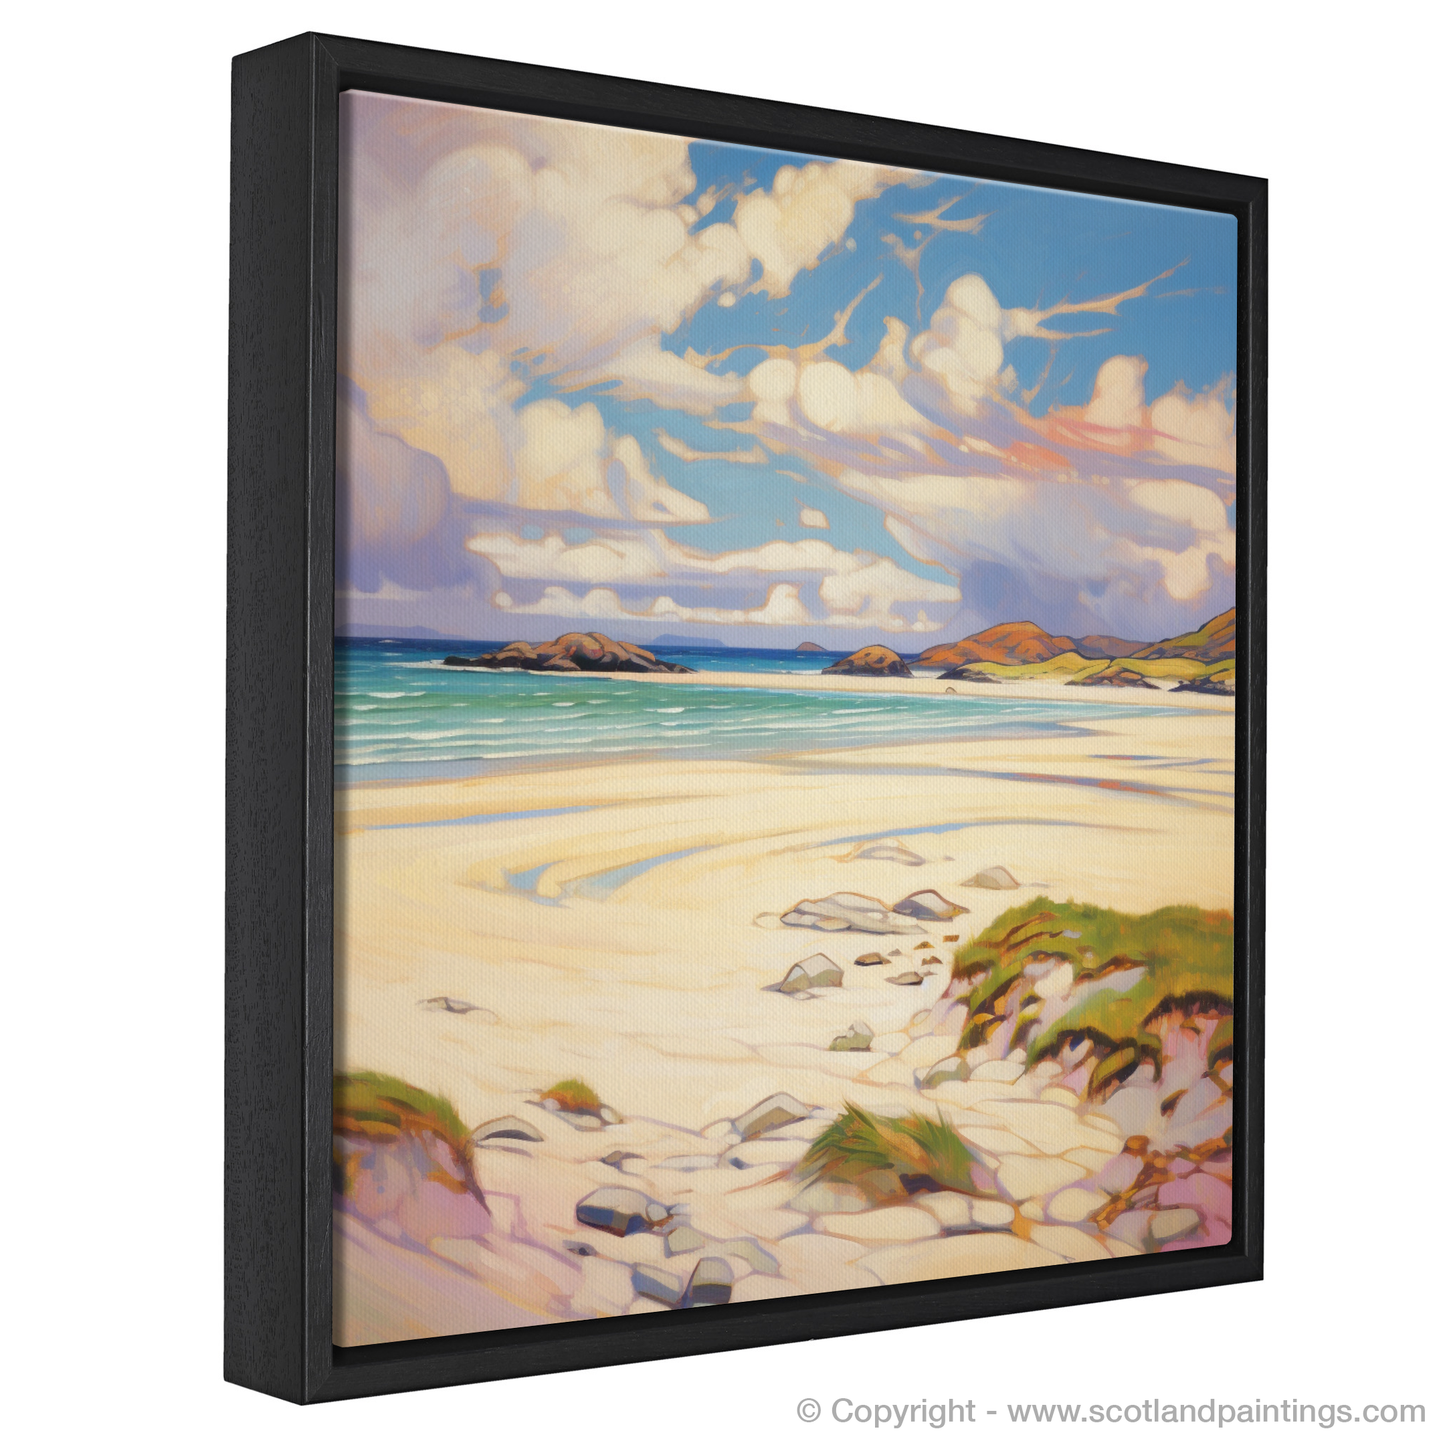 Painting and Art Print of Luskentyre Sands, Isle of Lewis in summer entitled "Summer Serenade at Luskentyre Sands".